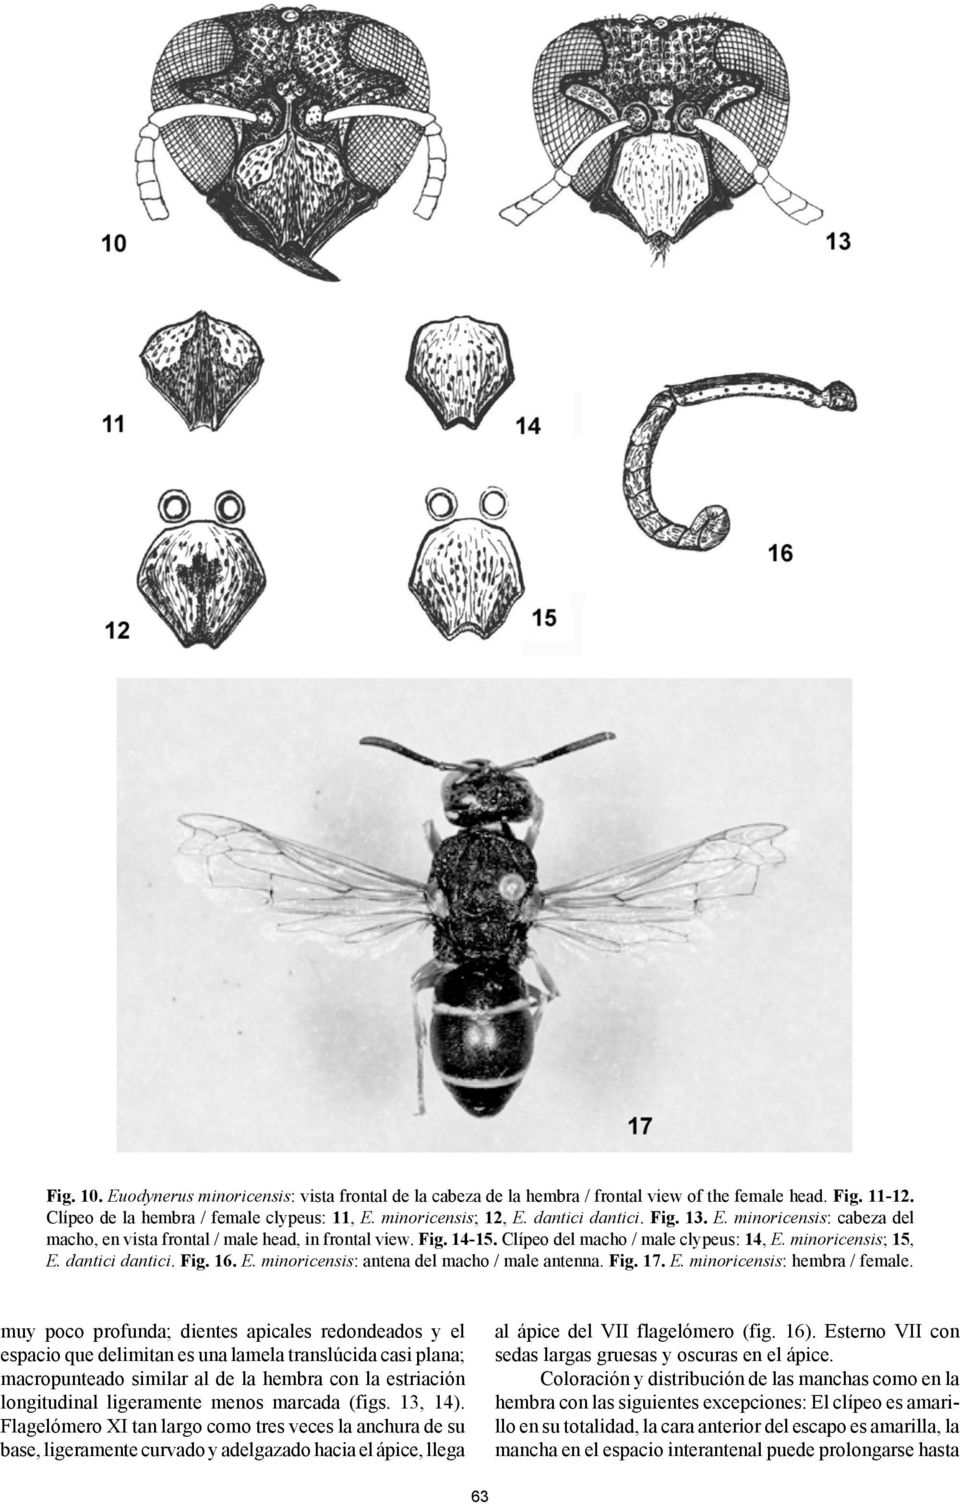 Fig. 16. E. minoricensis: antena del macho / male antenna. Fig. 17. E. minoricensis: hembra / female.